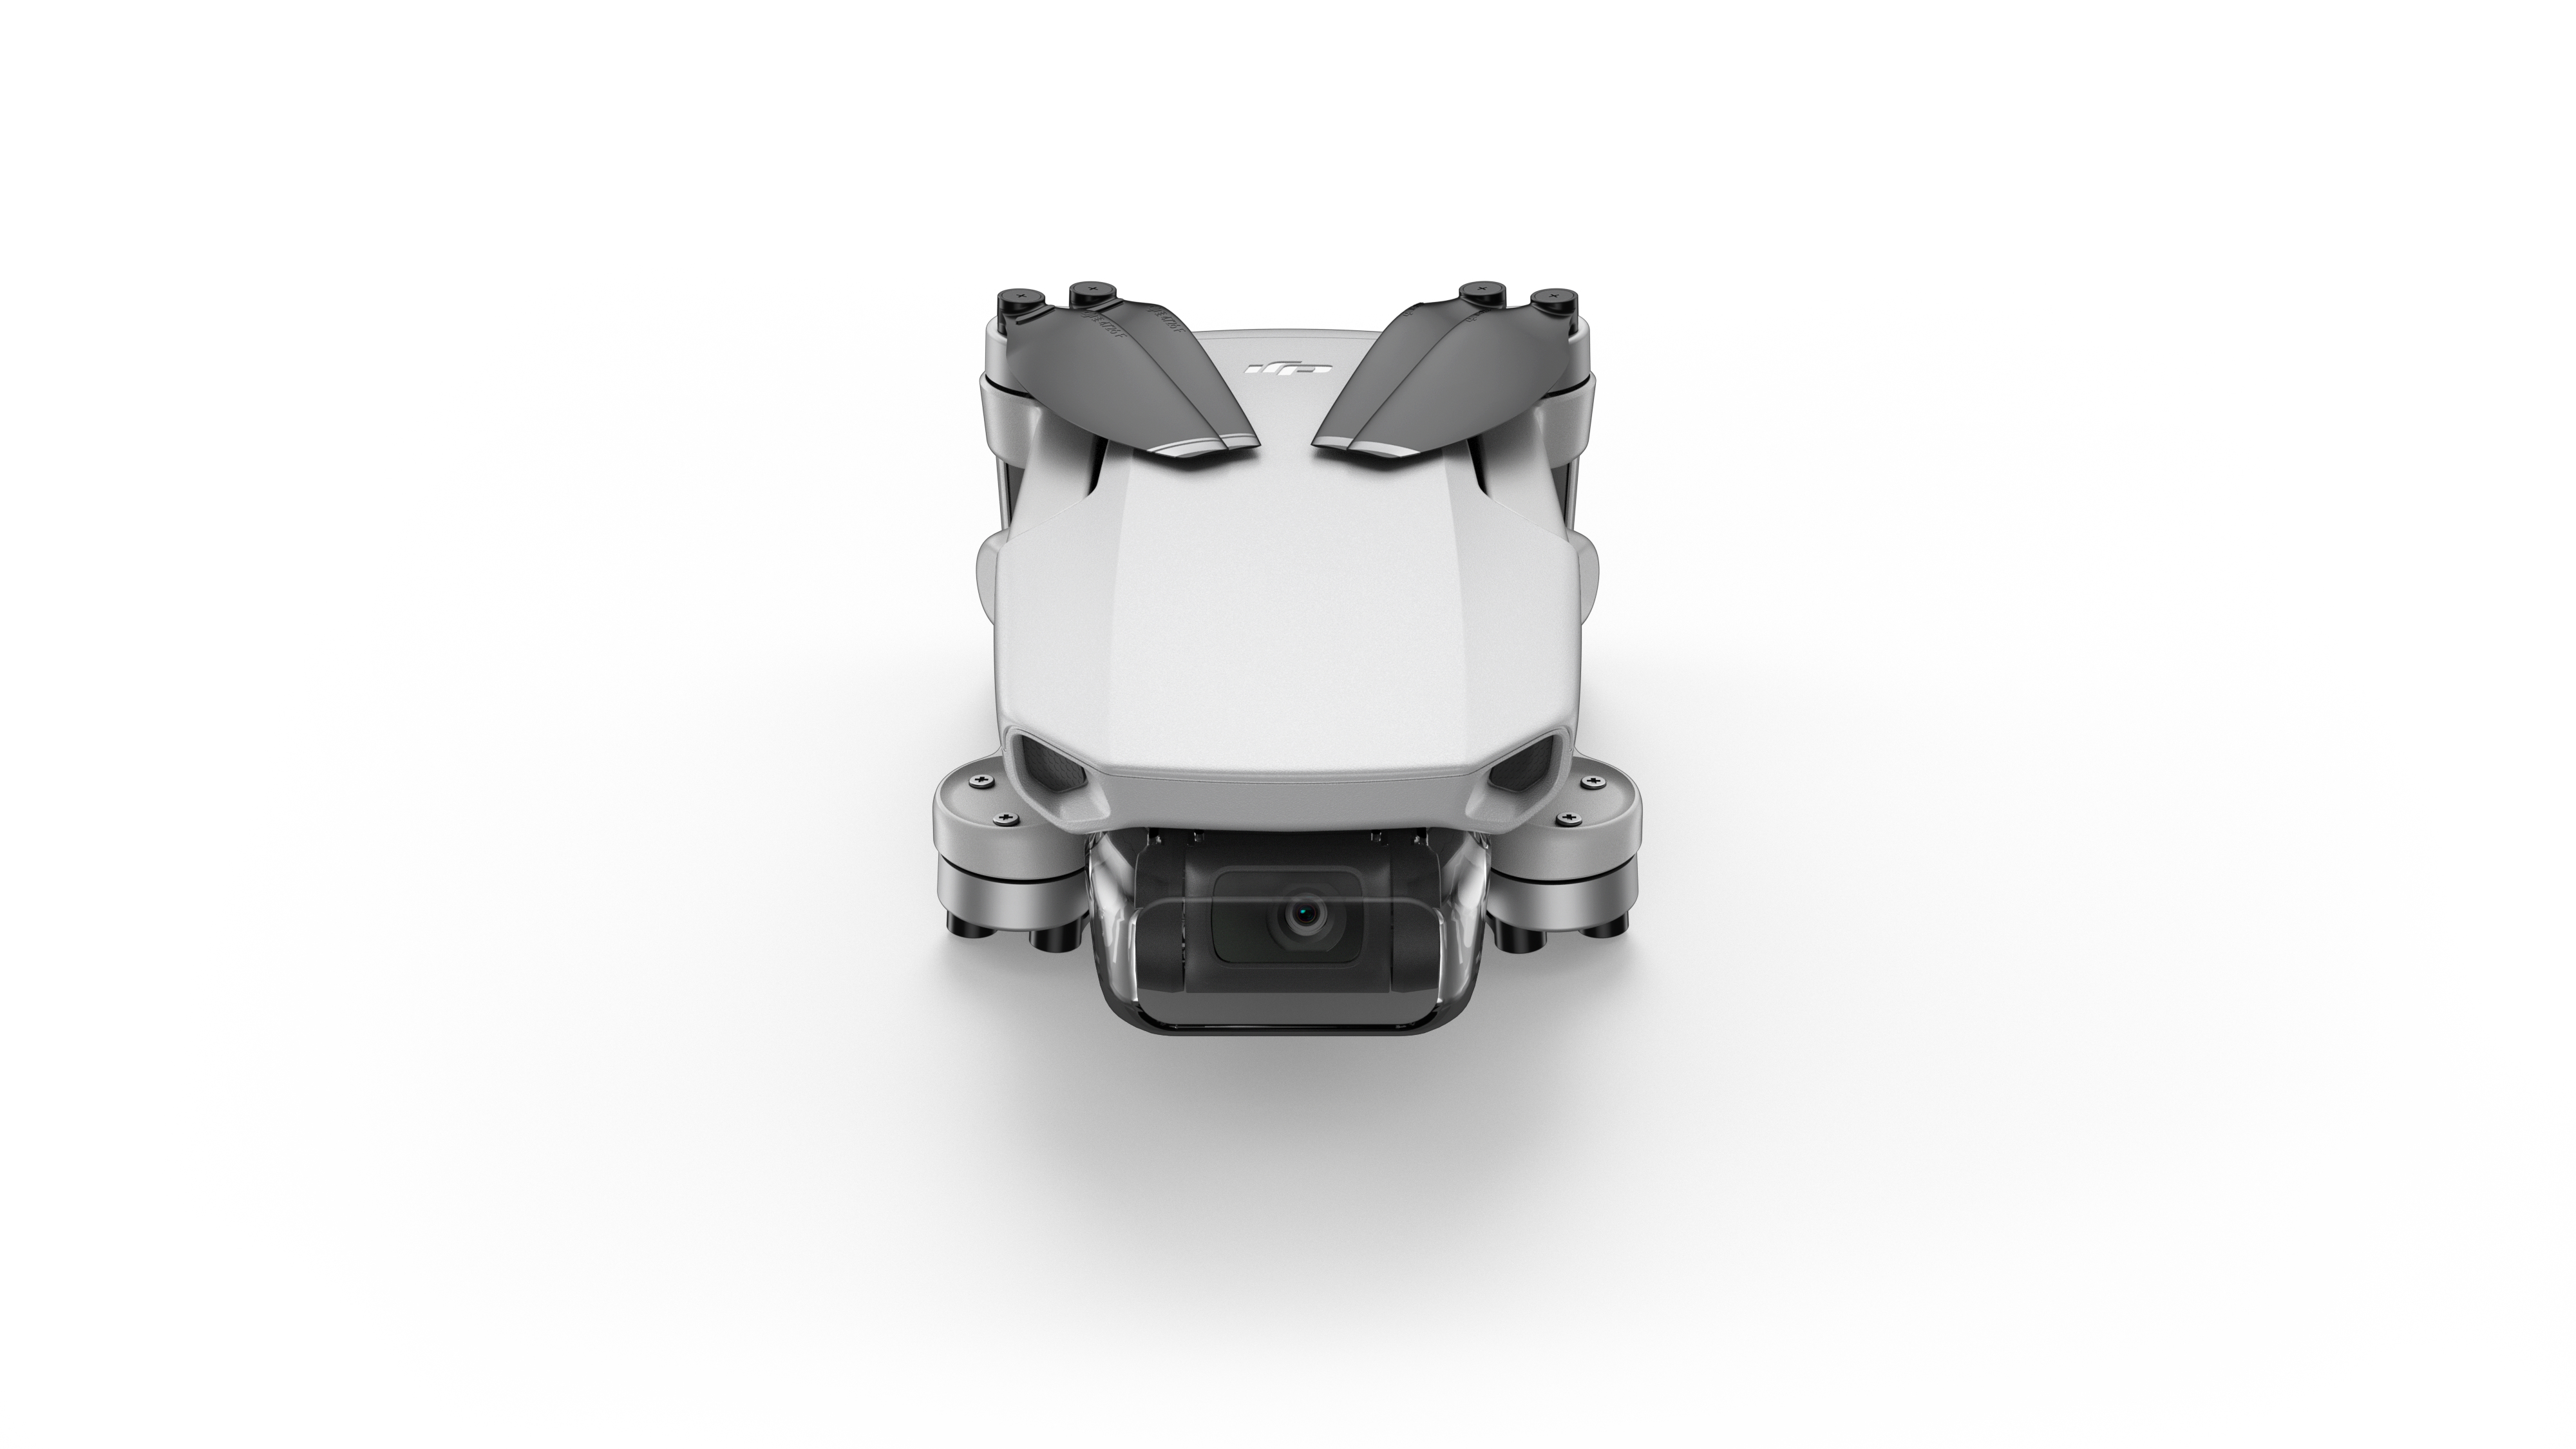 Drone con fotocamera DJI Mavic Mini Fly More Combo Quadrirotore Nero, Bianco 4 rotori 12 MP 2720 x 1530 Pixel 2400 mAh [CP.MA.00000124.01]